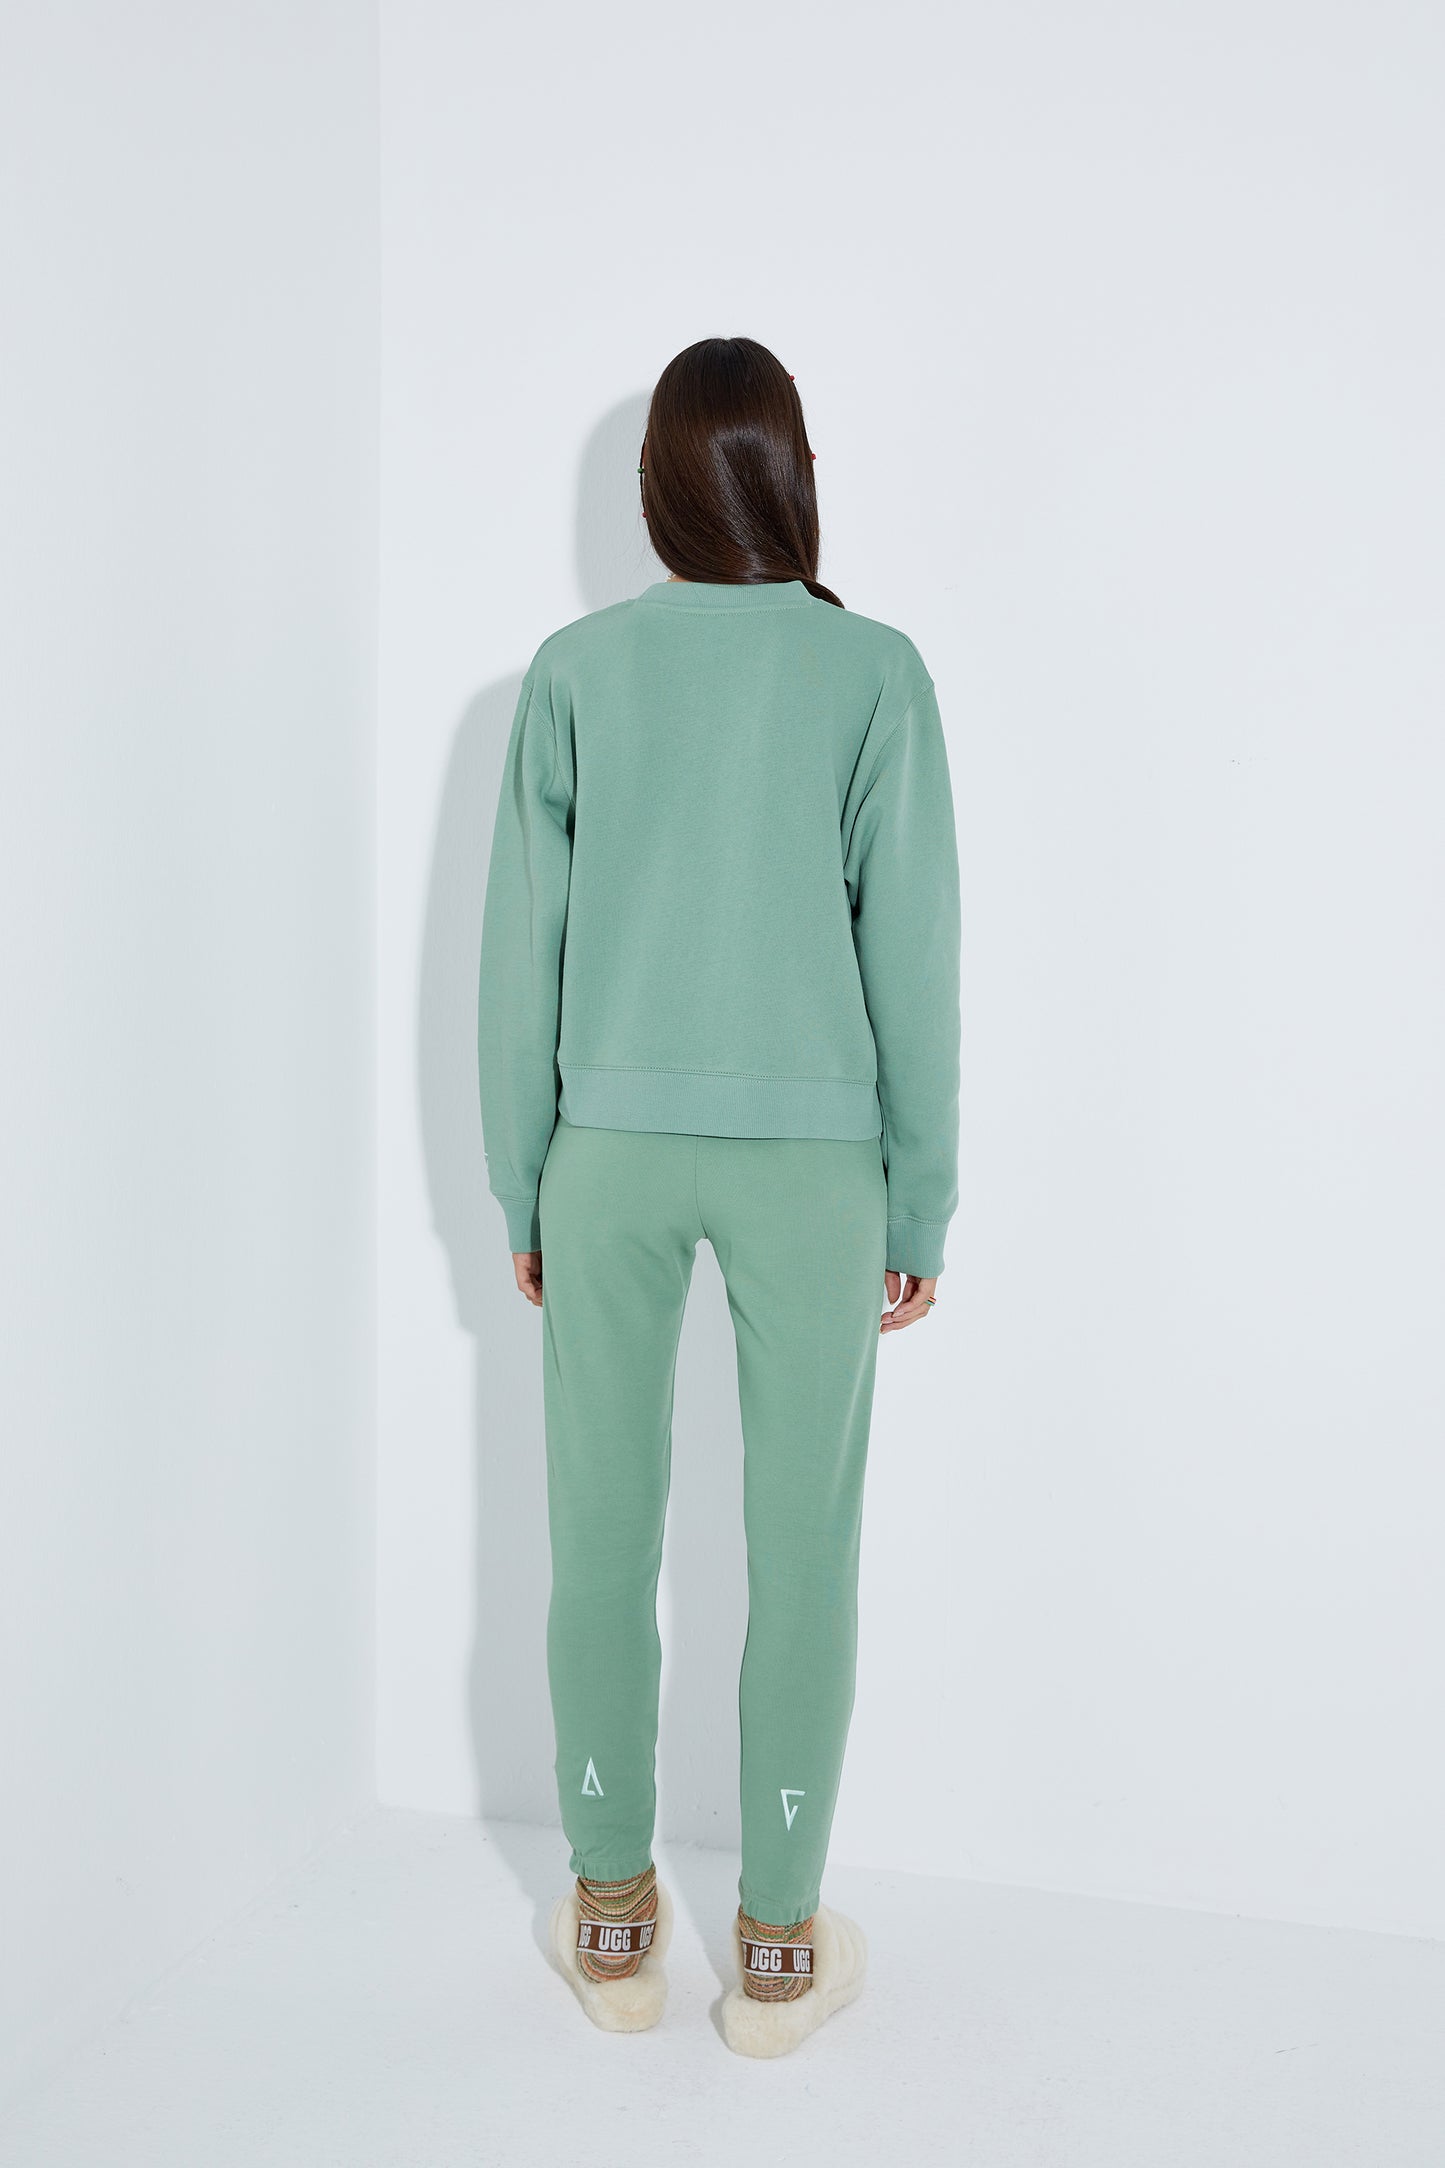 Load image into Gallery viewer, Cotton Crewneck Sweatshirt - Jade
